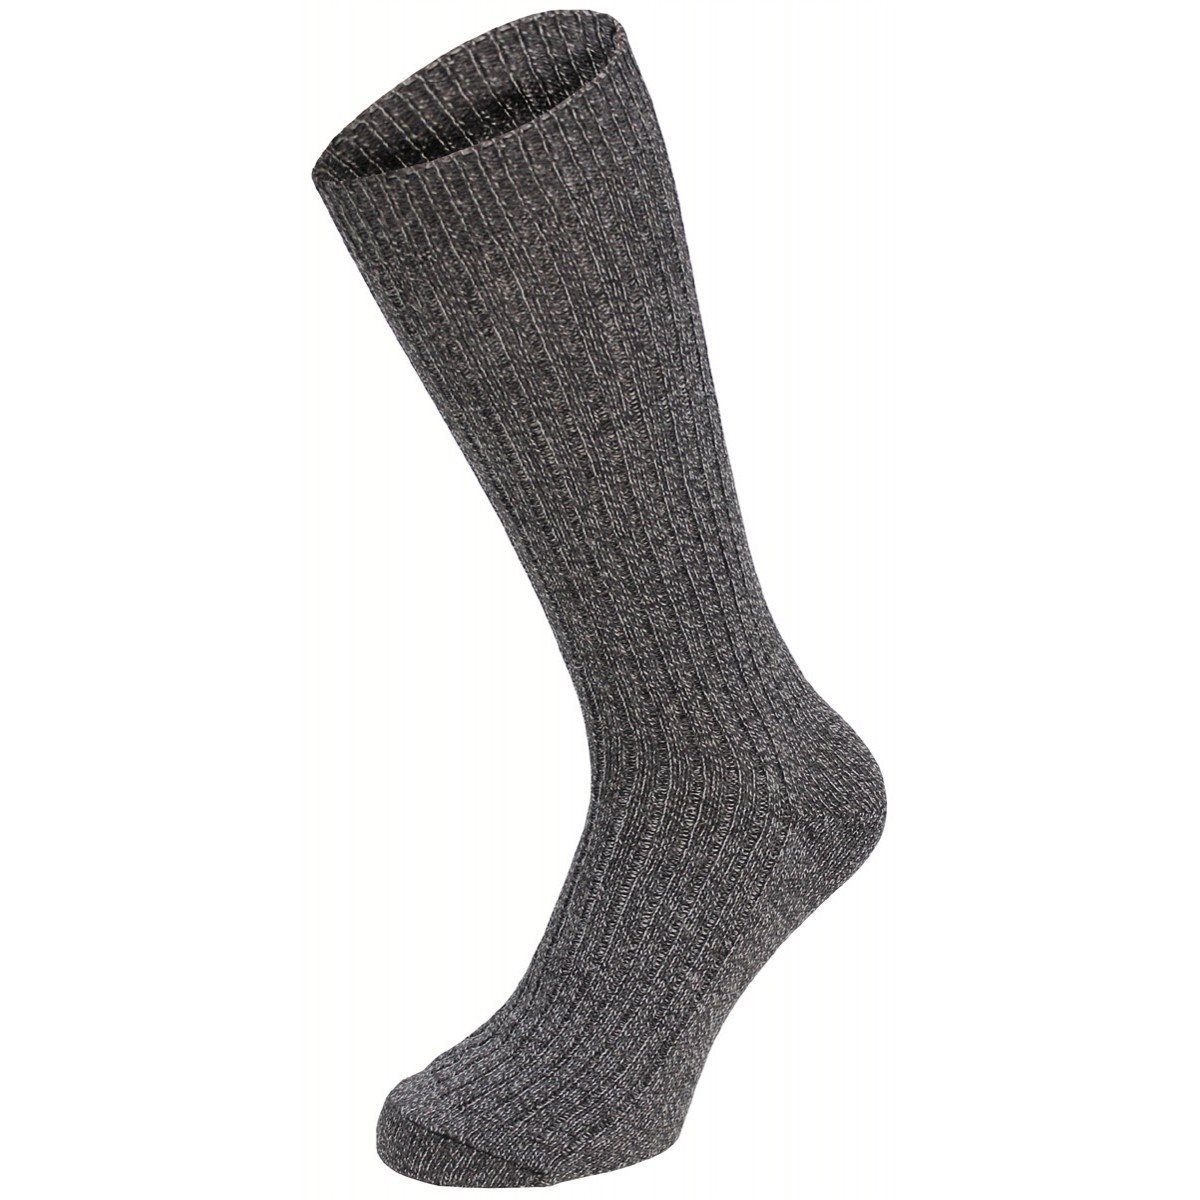 Ponožky styl BW s patou extra vysoké ŠEDÉ Velikost: 45-46